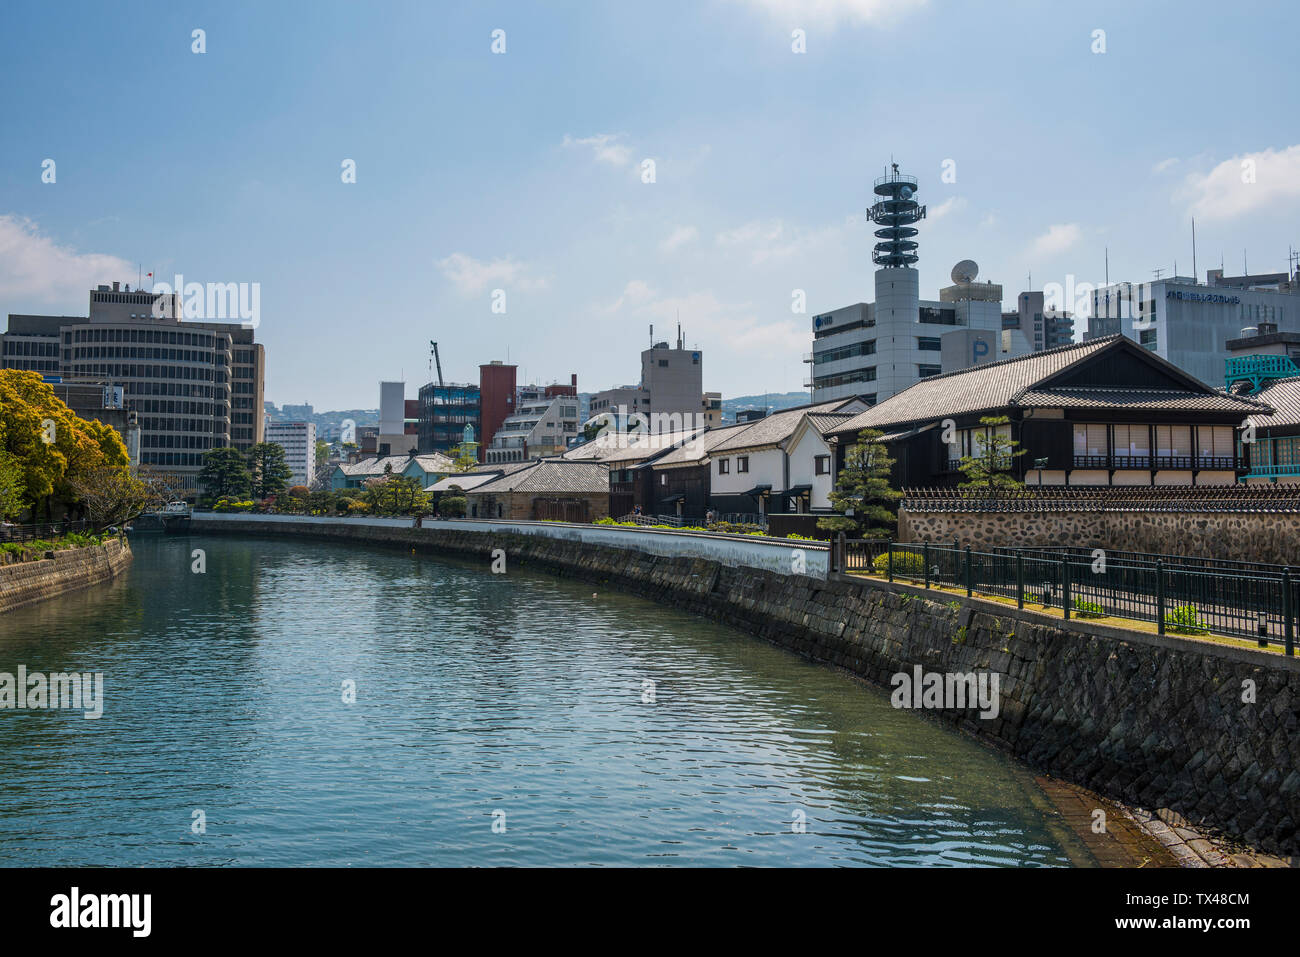 Japon, Nagasaki, bâtiments coloniaux sur l'île de Dejima homme fait dans le port de Nagasaki Banque D'Images